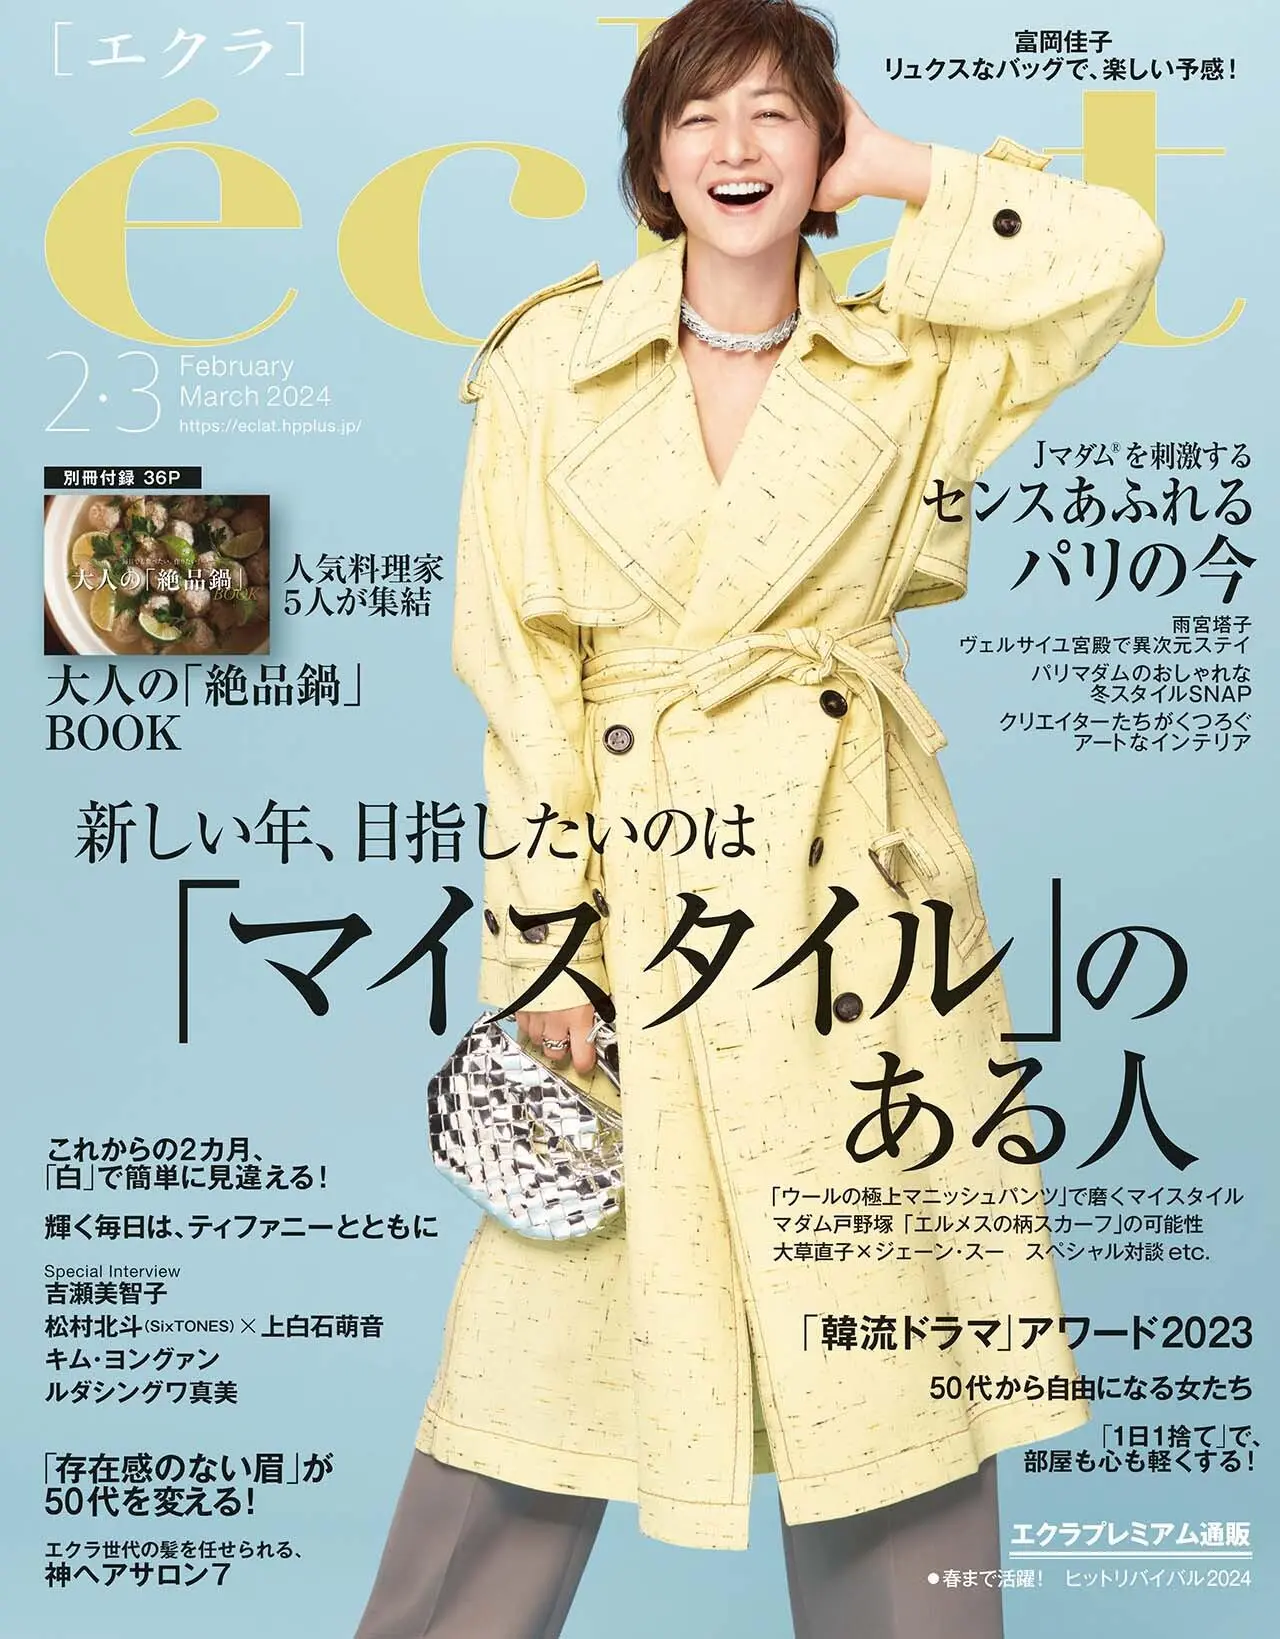 エクラ2・3月号表紙。カバーモデルは富岡佳子さん。